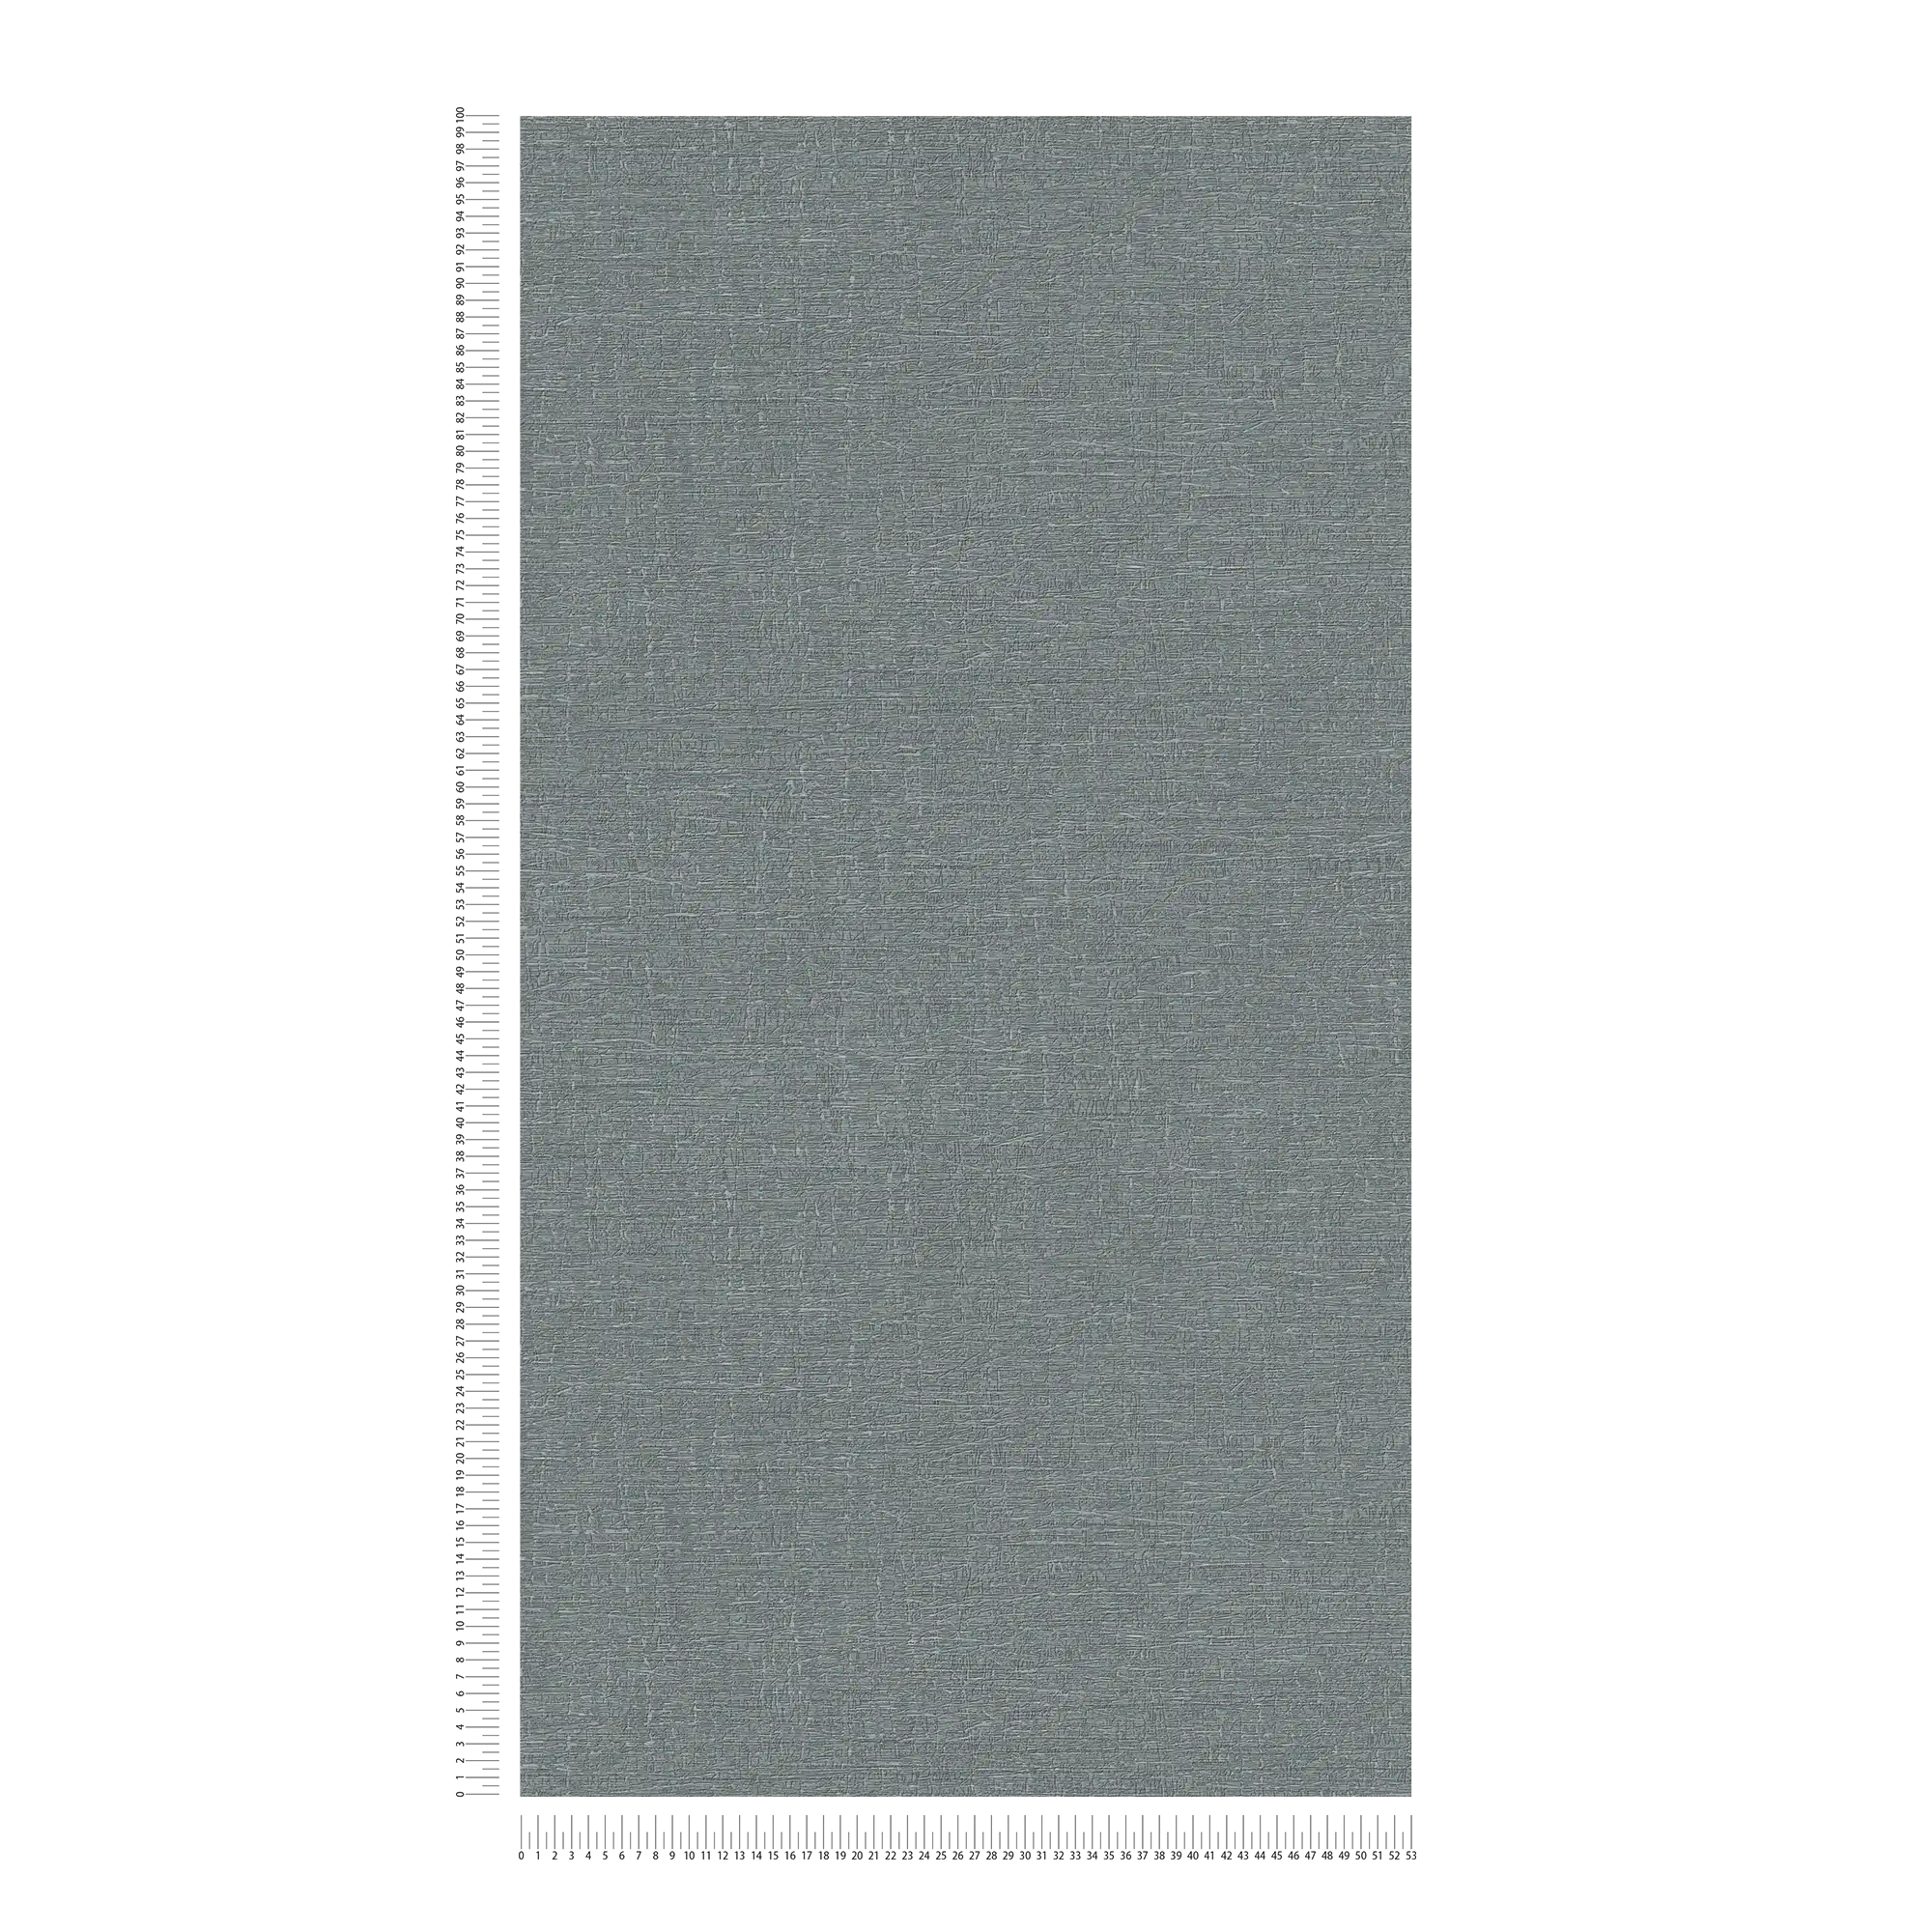             Vliesbehang in textiellook met lichte textuur - grijs
        